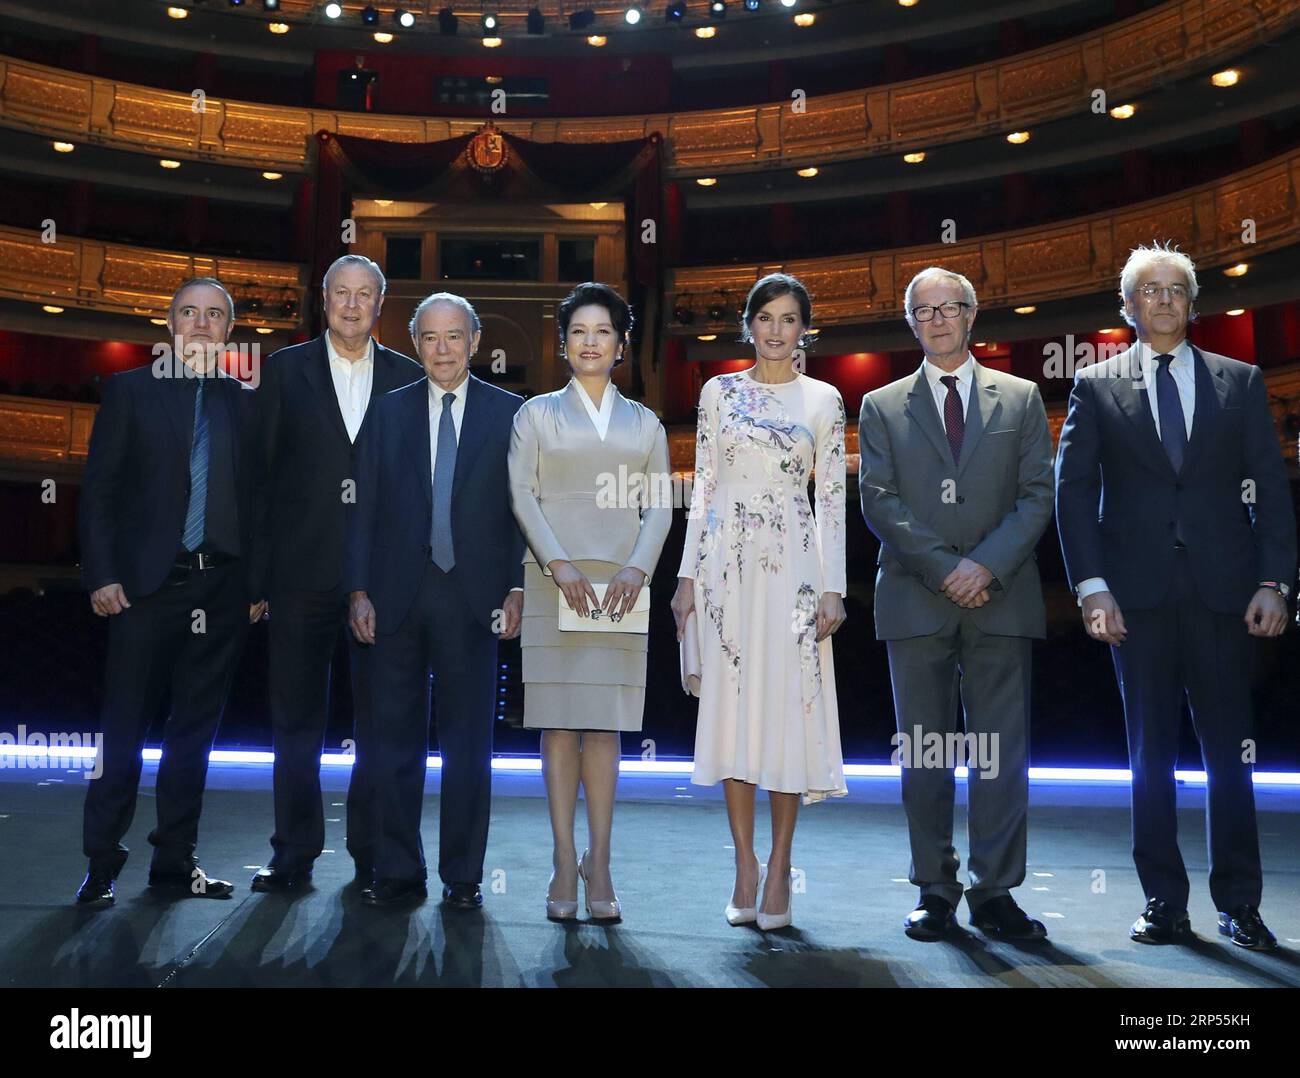 (181128) -- MADRID, 28 novembre 2018 -- moglie del presidente cinese Xi Jinping, Peng Liyuan (C), visita il Teatro Real (Teatro reale), accompagnato dalla regina Letizia di Spagna, a Madrid, Spagna, 28 novembre 2018. ) SPAGNA-MADRID-PENG LIYUAN-TEATRO REAL DINGXLIN PUBLICATIONXNOTXINXCHN Foto Stock